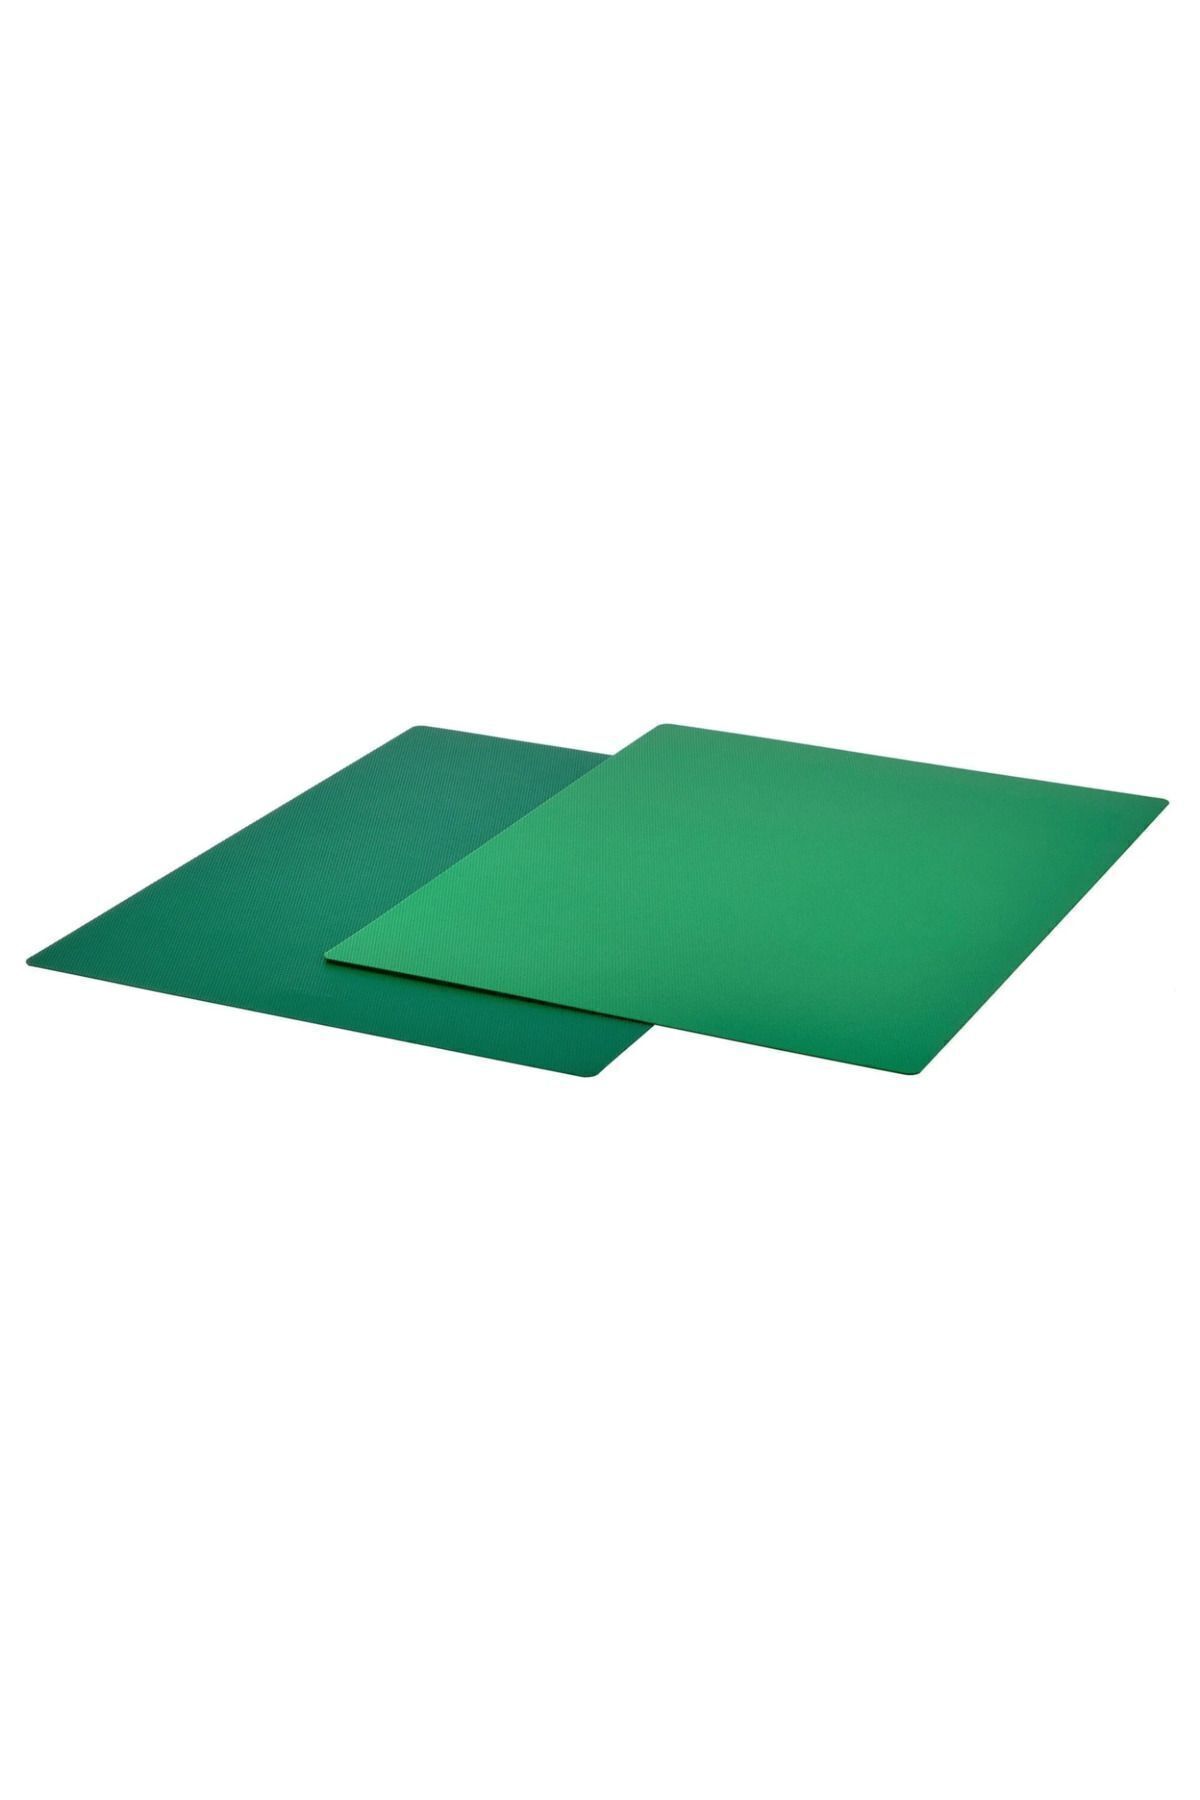 IKEA FINFÖRDELA kesme tahtası , yeşil, 28x36 cm, 2 parça